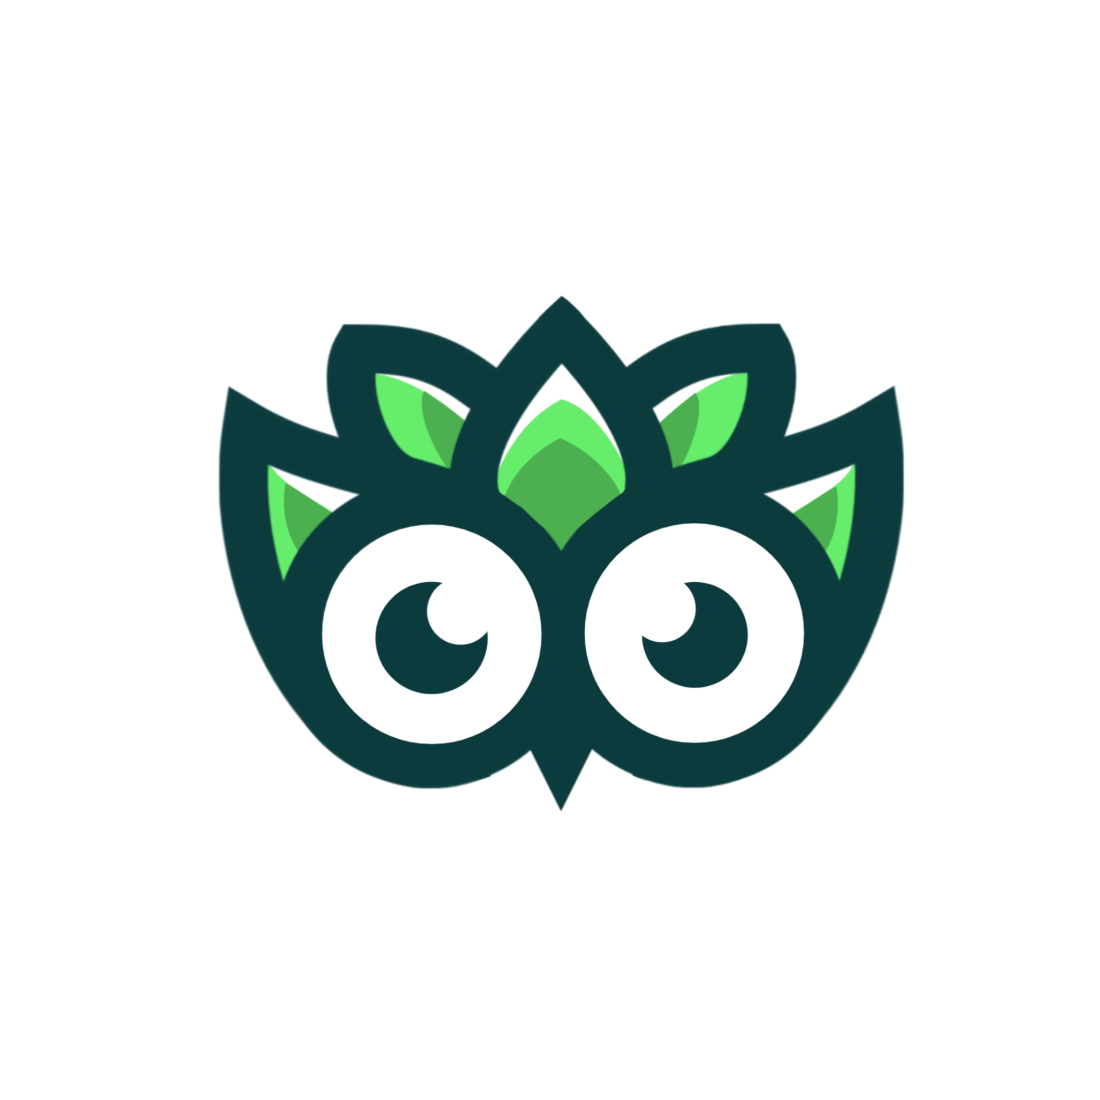 Bird Logo cover image.